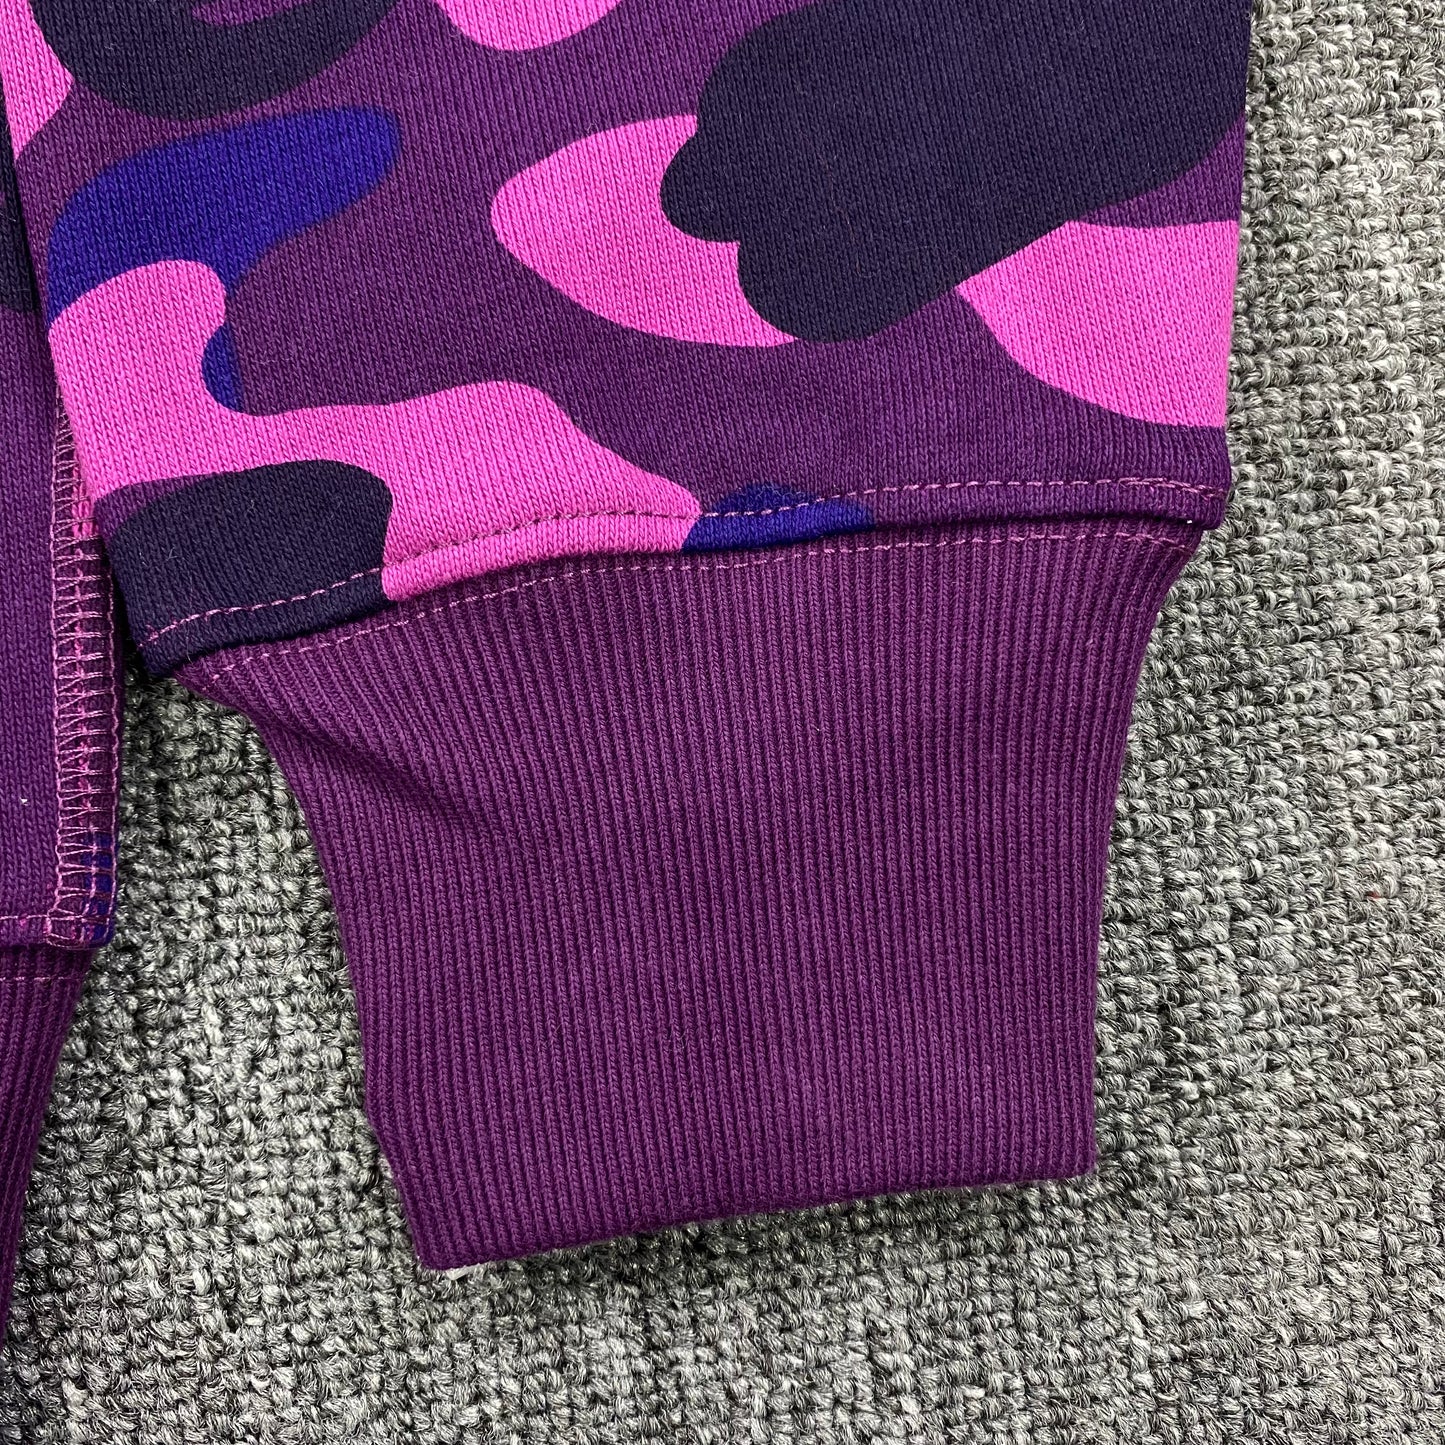 BAPE Hoodie - 1st Camo Purple Full Zip Hoodie